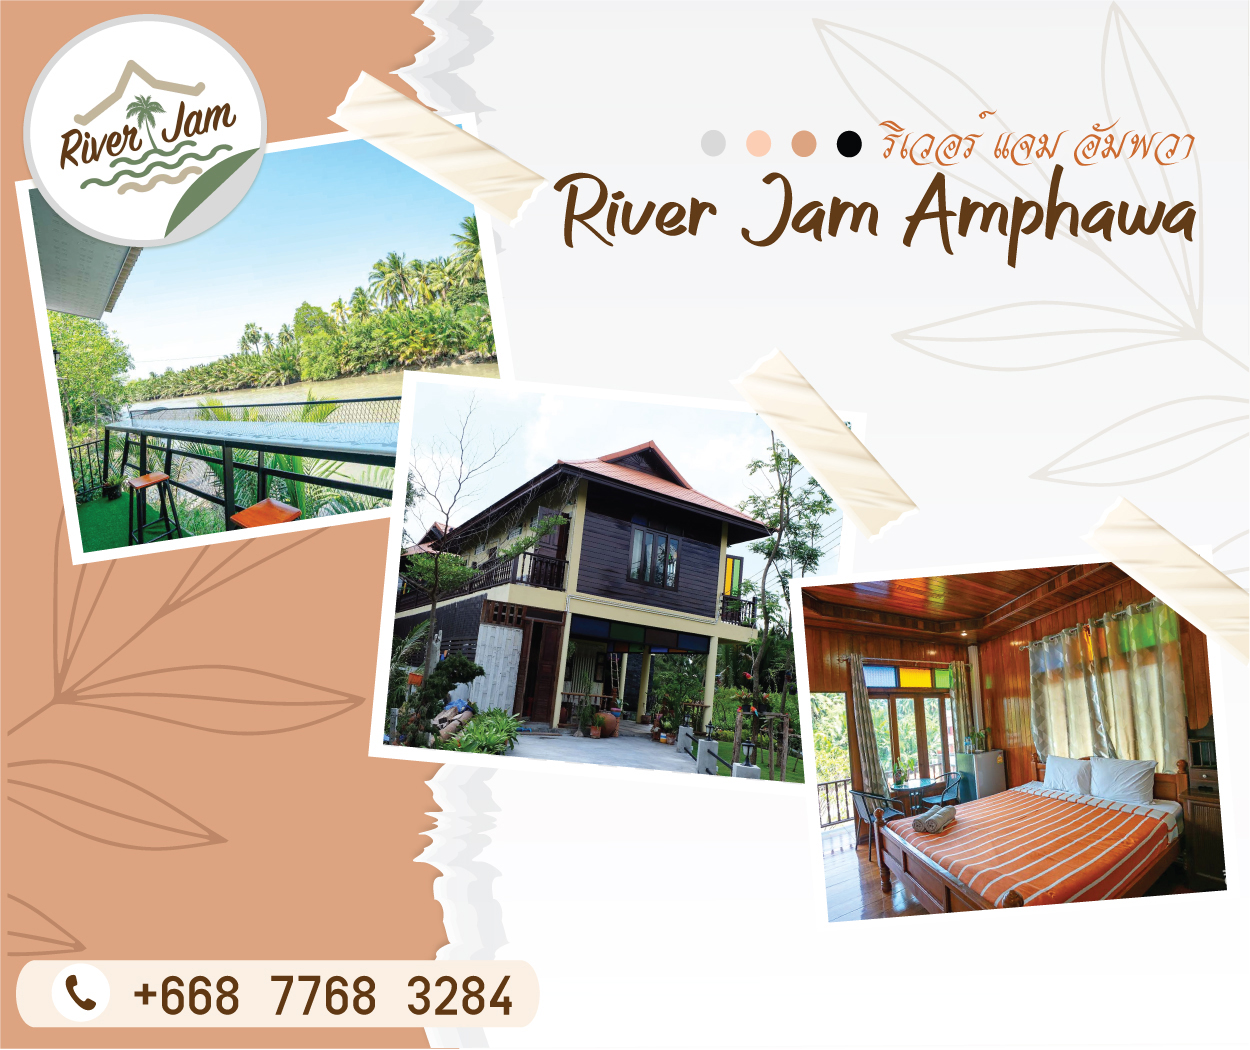 River Jam Amphawa